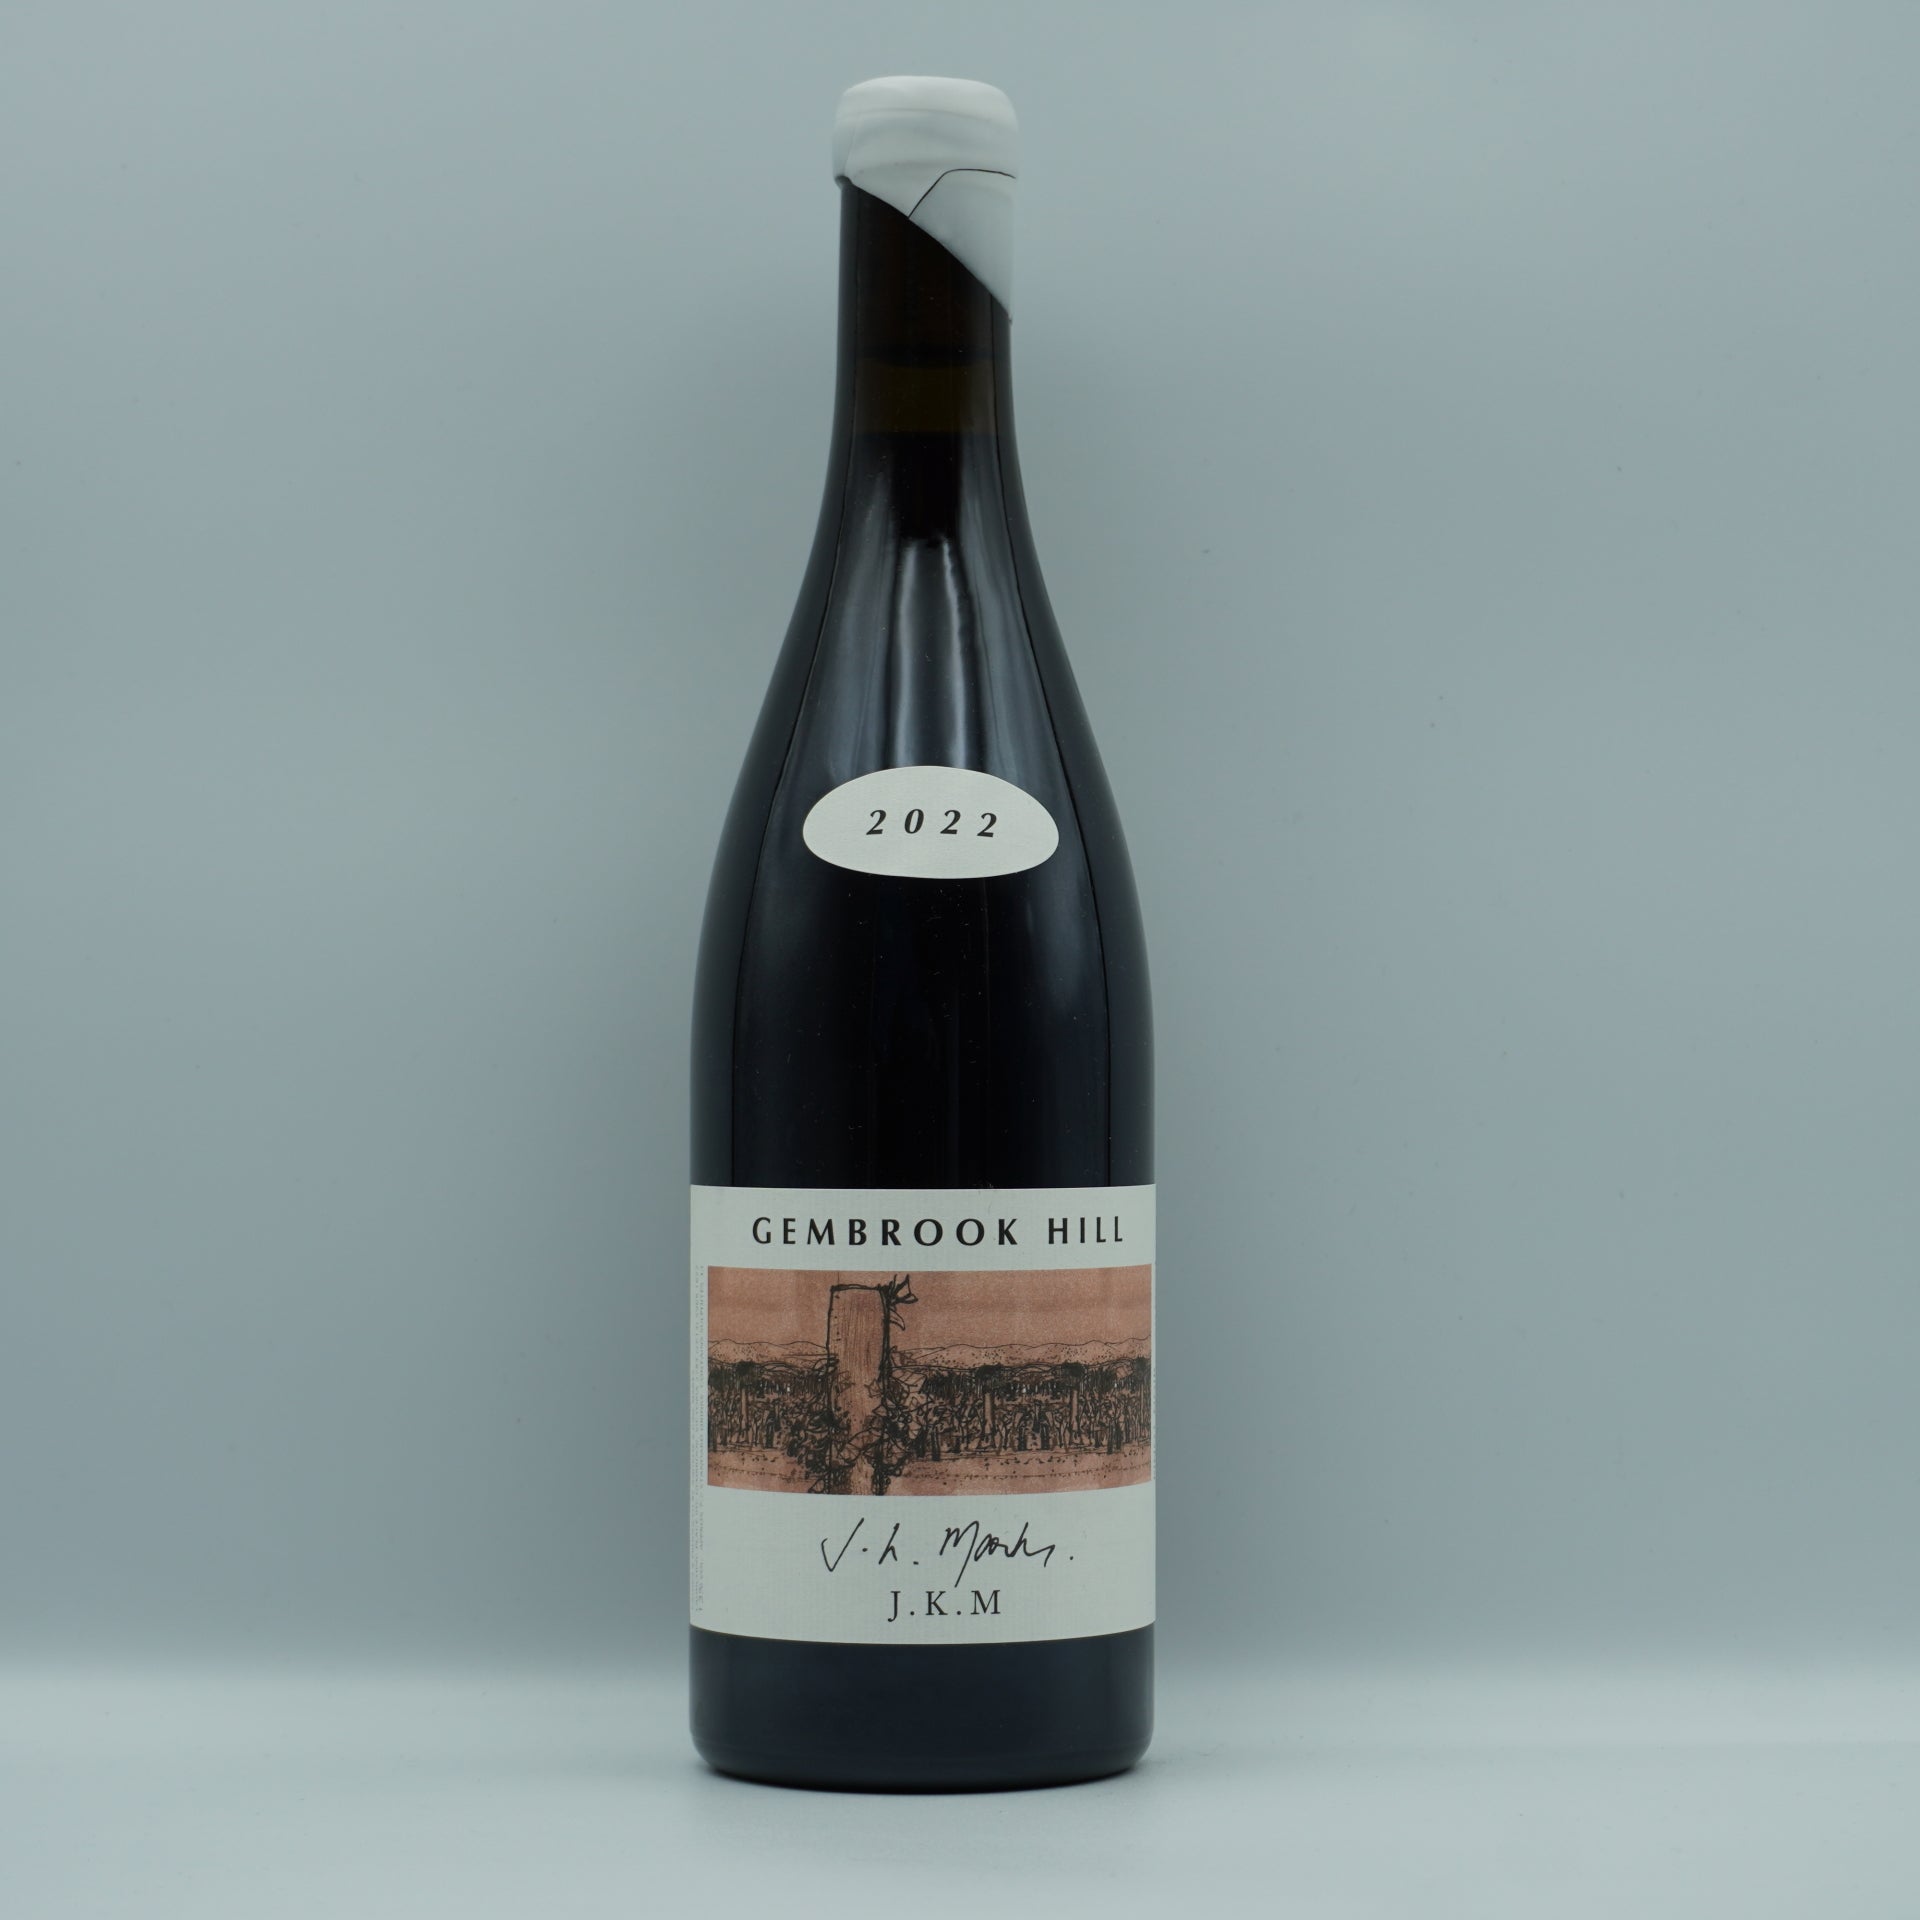 Gembrook Hill, 'JKM' Pinot Noir 2022